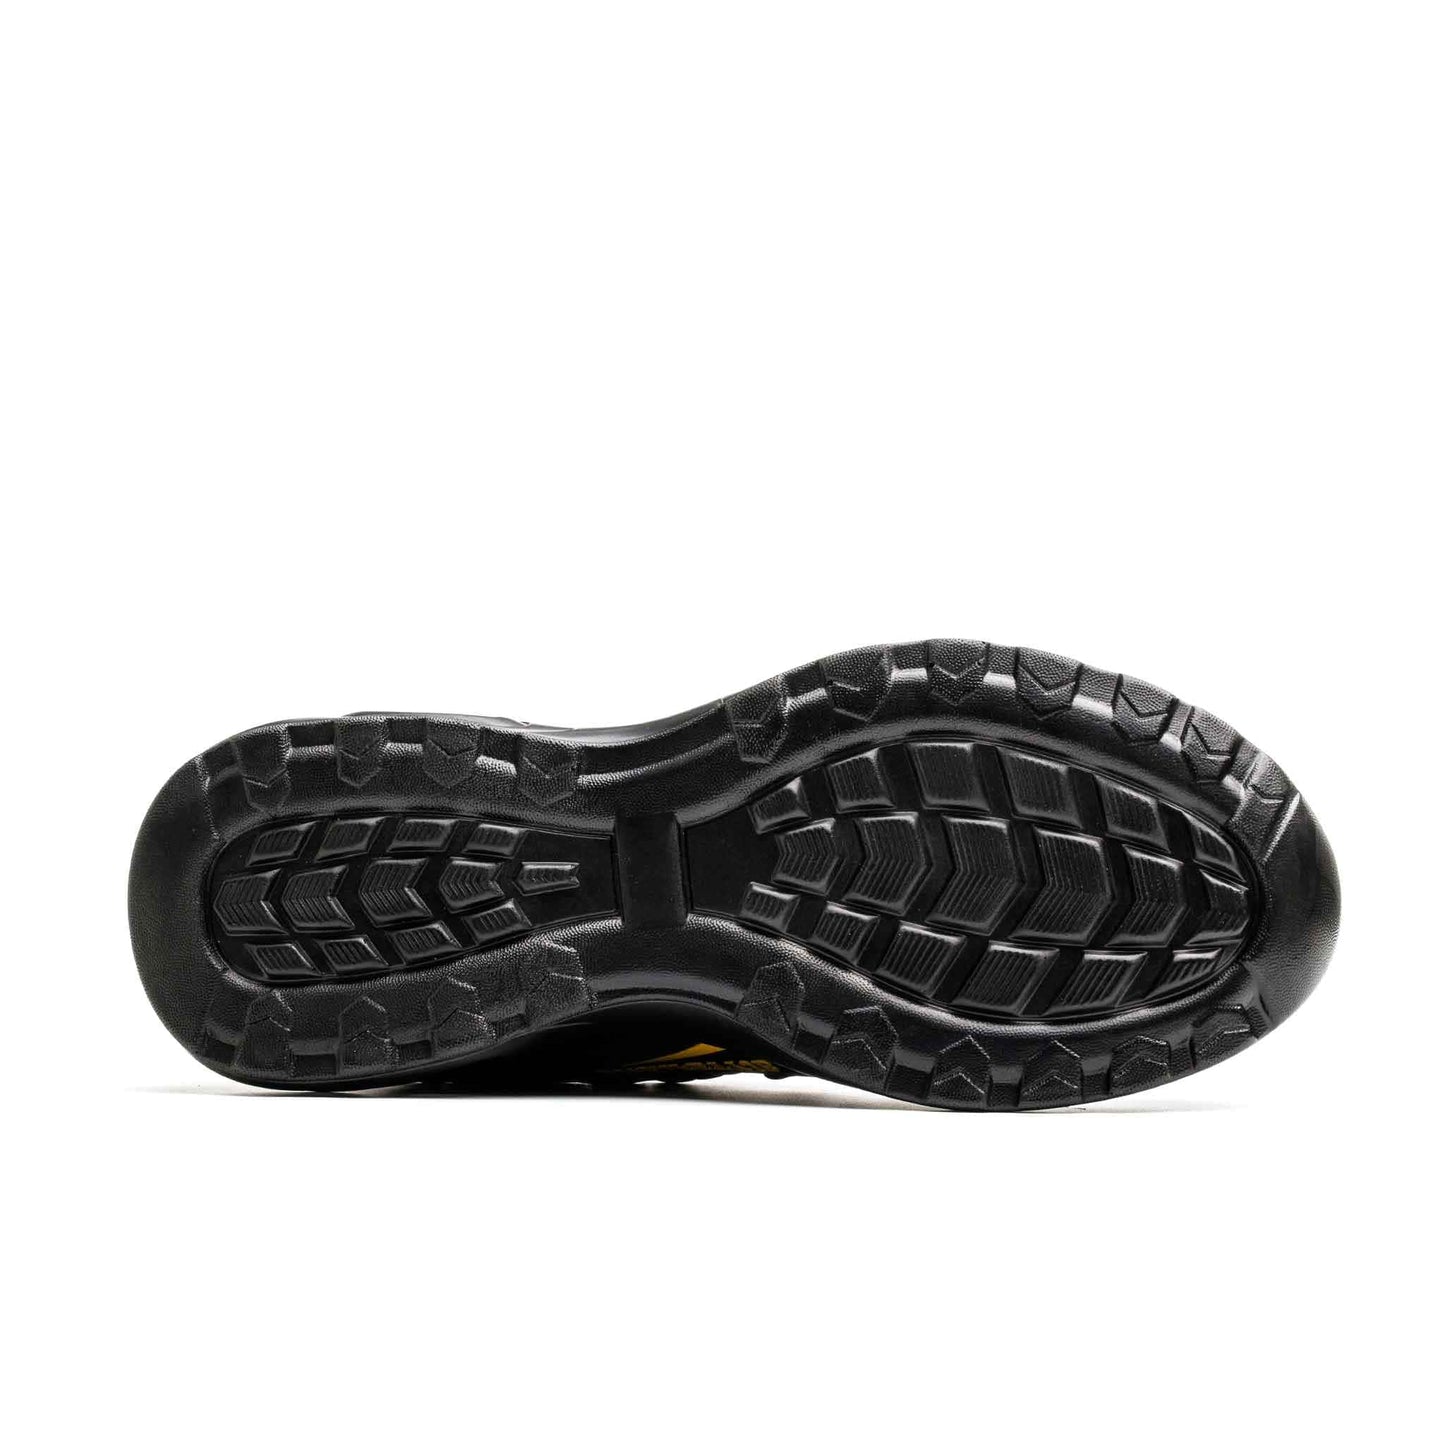 Ironfeet Flash - Chaussures de sécurité légères avec bulles d'air